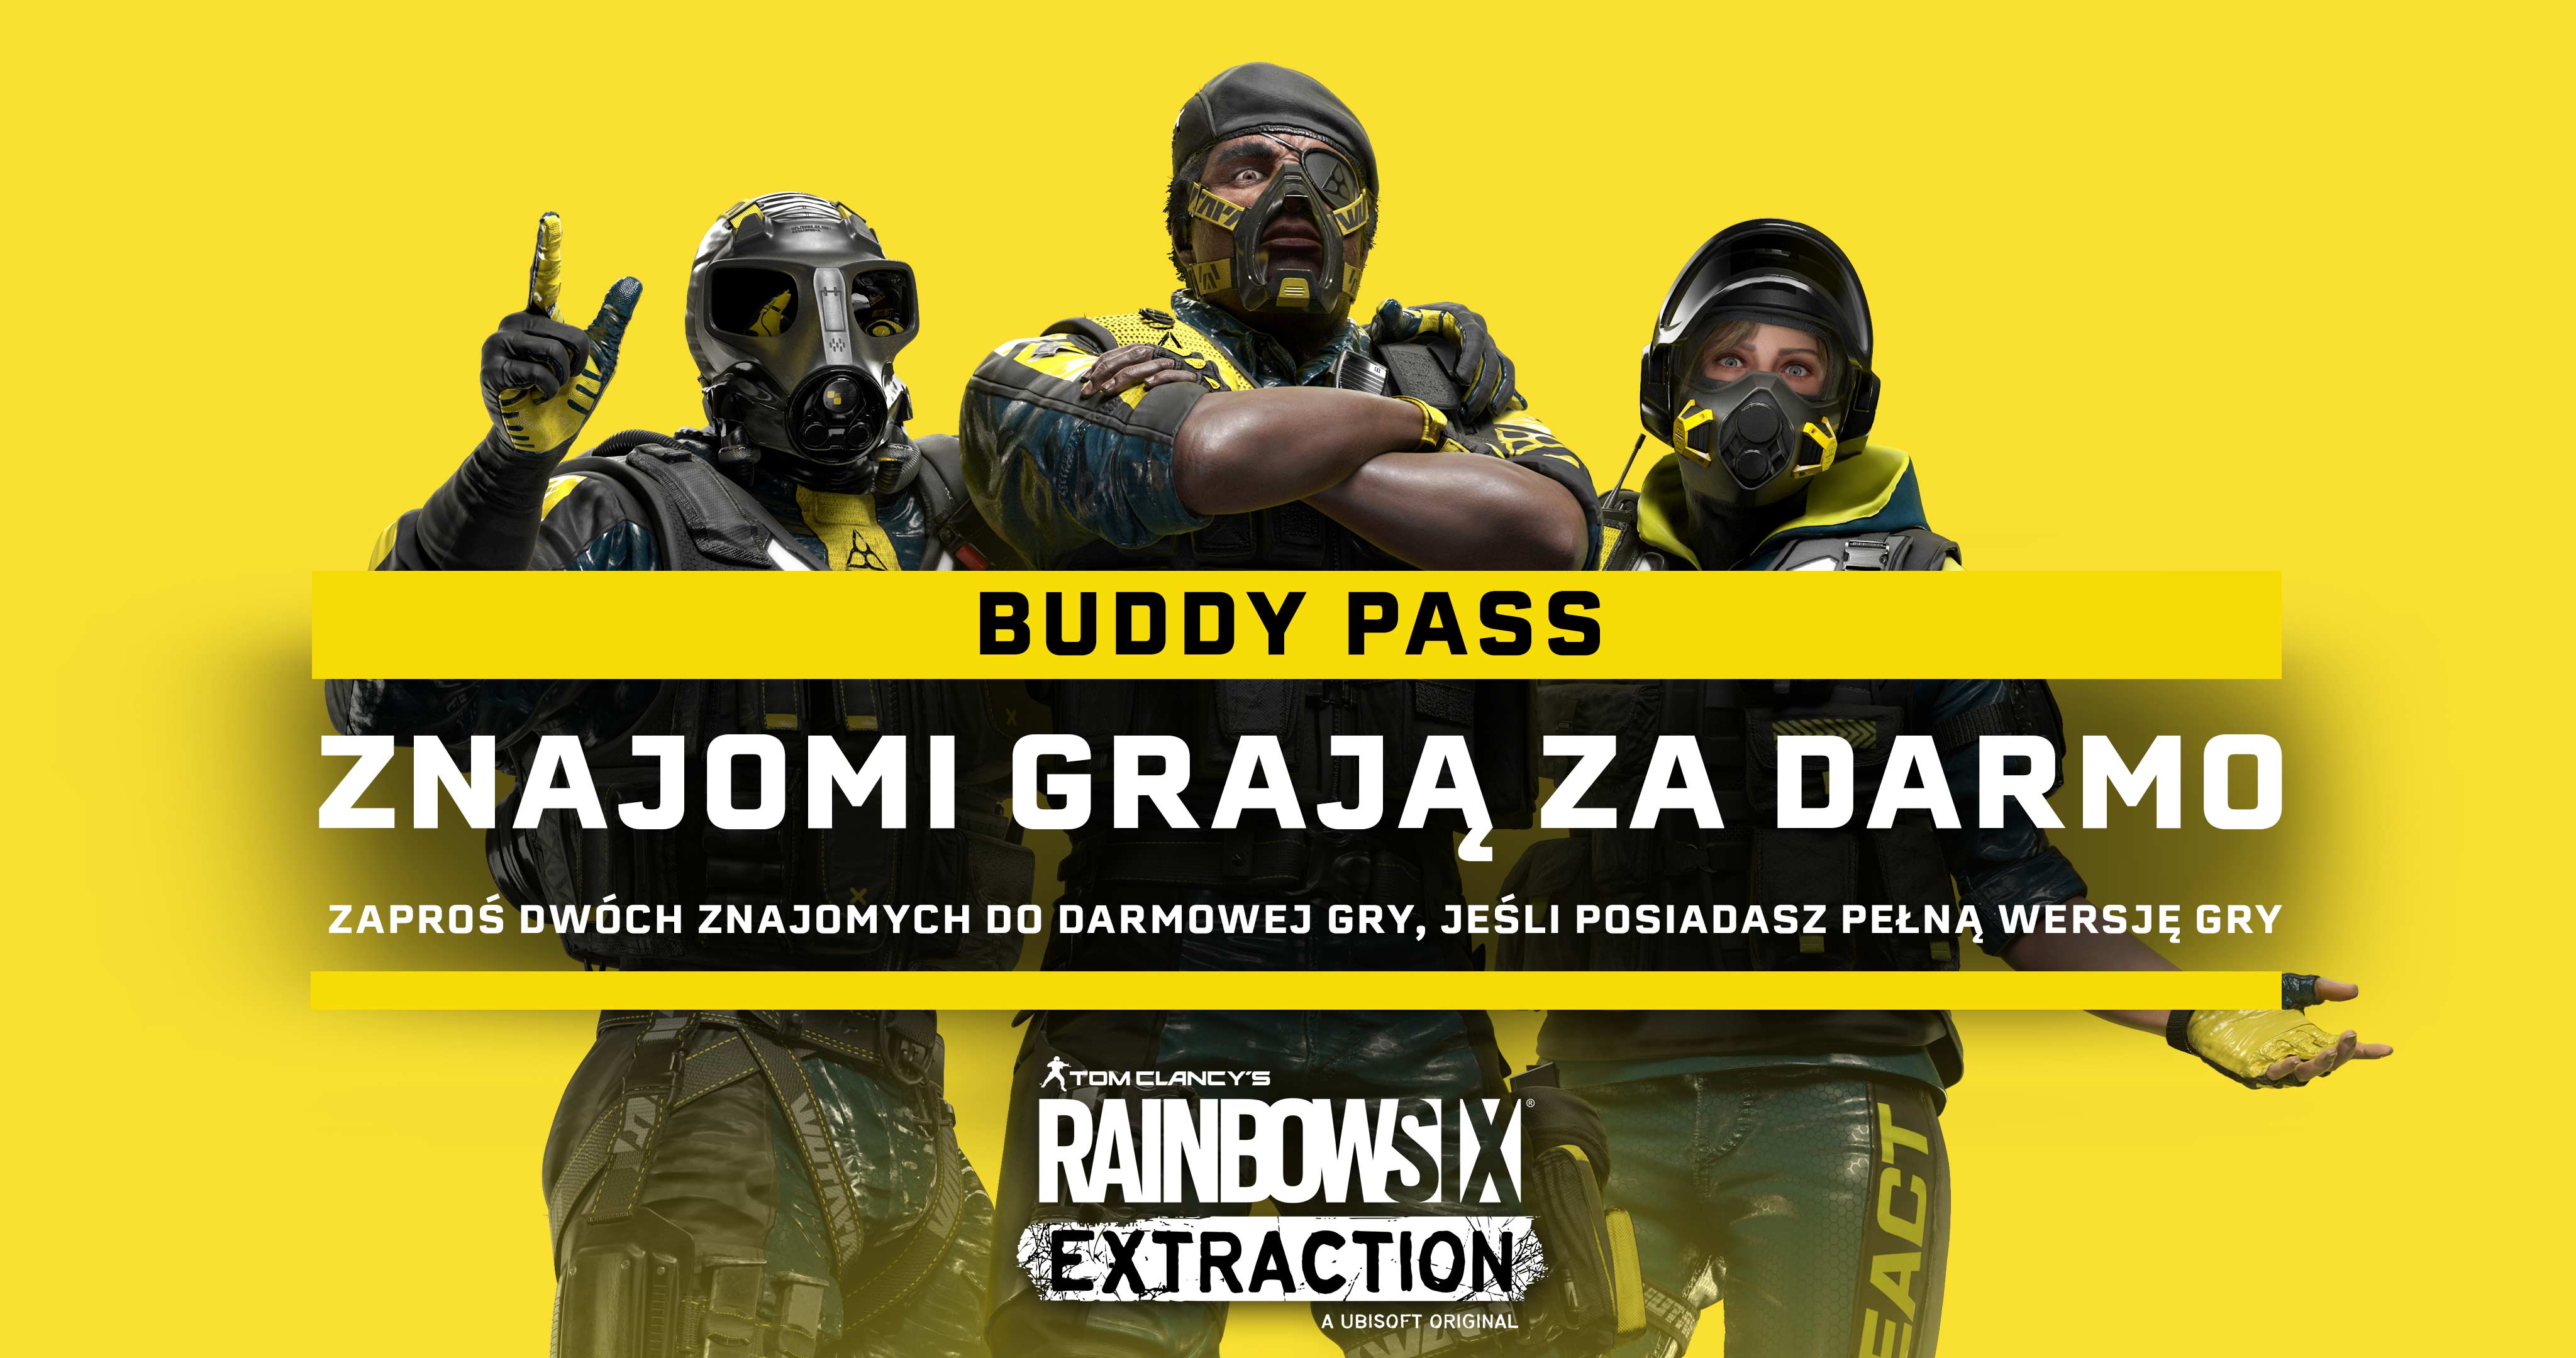 Buddy Pass jest dołączana do każdej kopii pełnej wersji gry Rainbow Six Extraction. Możesz dzięki niej cieszyć się wspólną grą z dwójką przyjaciół na dowolnej platformie przez 14 dni, nawet jeśli nie posiadają oni gry.